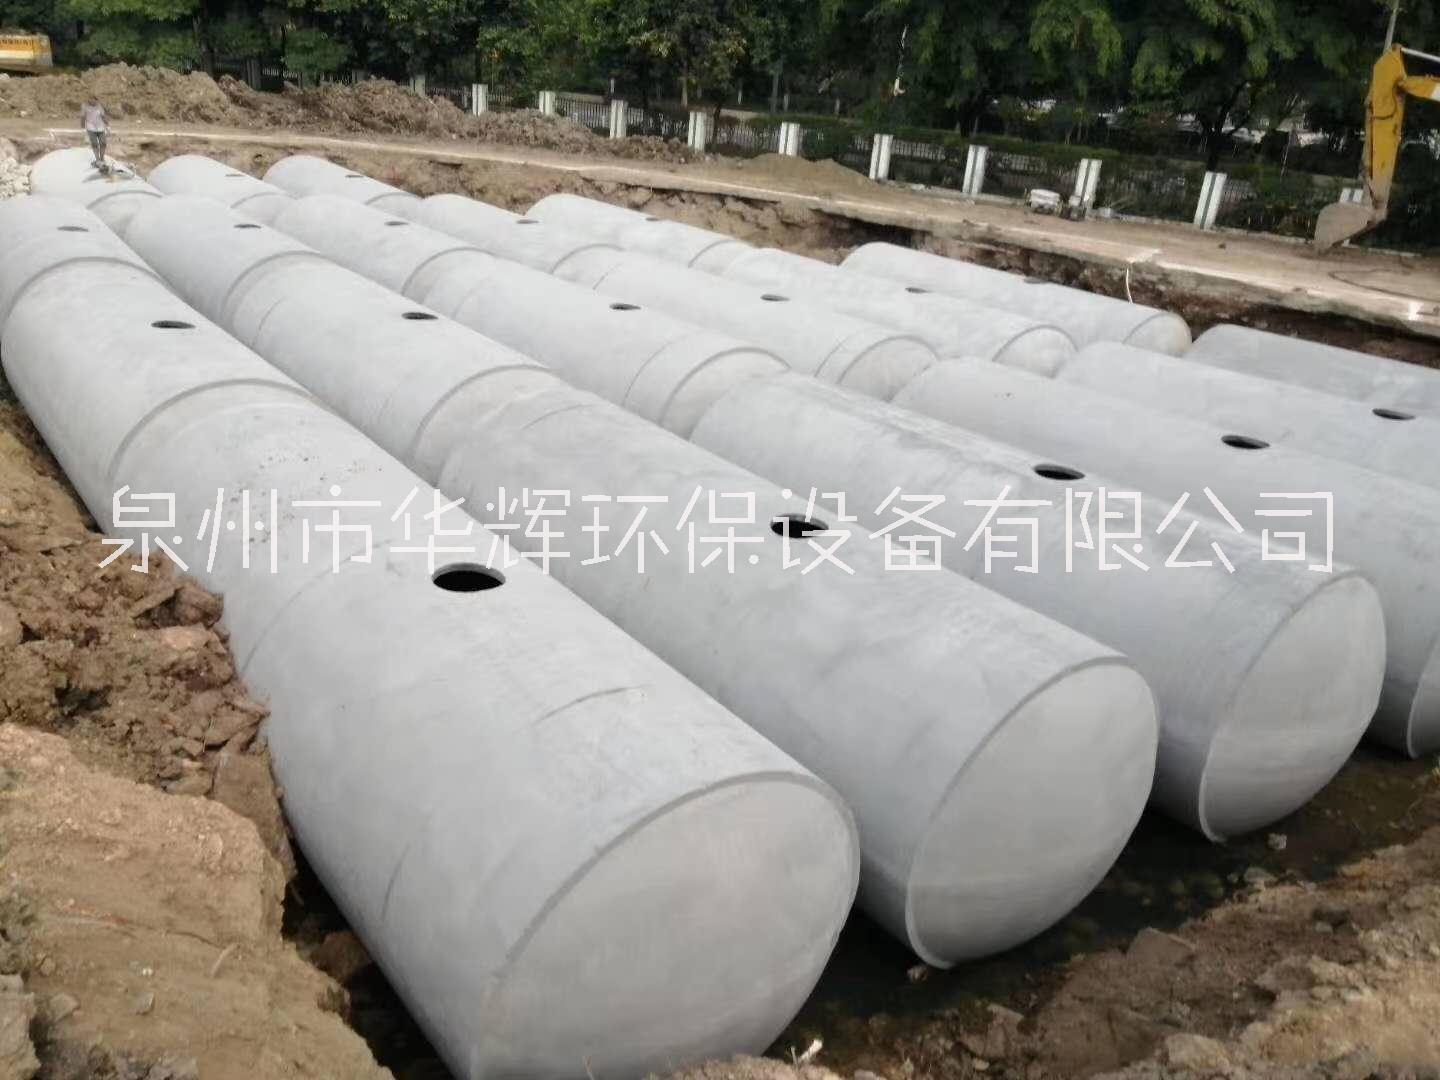 福建漳州实惠的水泥化粪池厂家 水泥化粪池价格图片